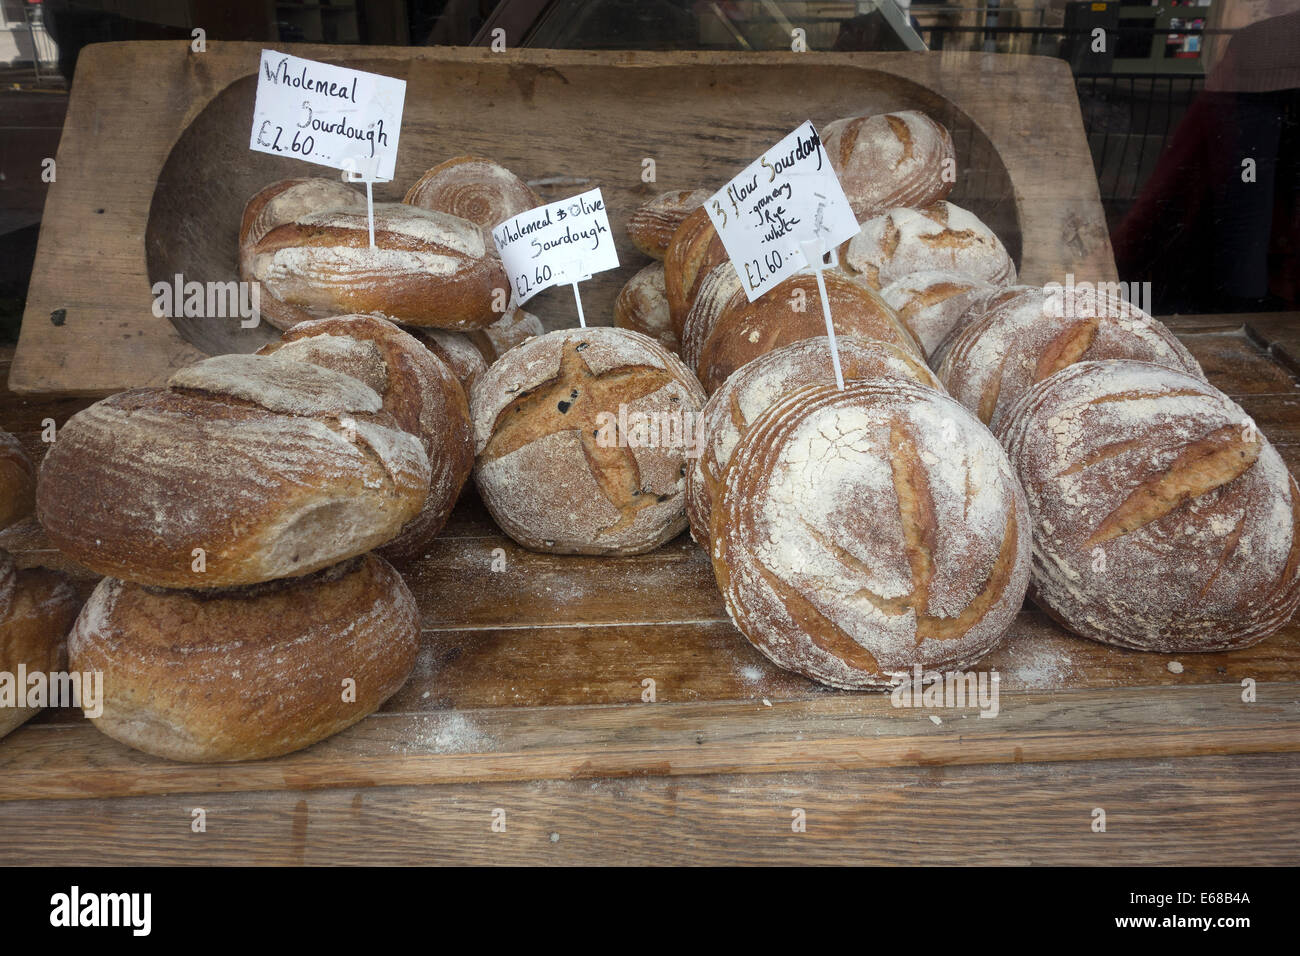 Sourdough Bread in bakers window Stock Photo